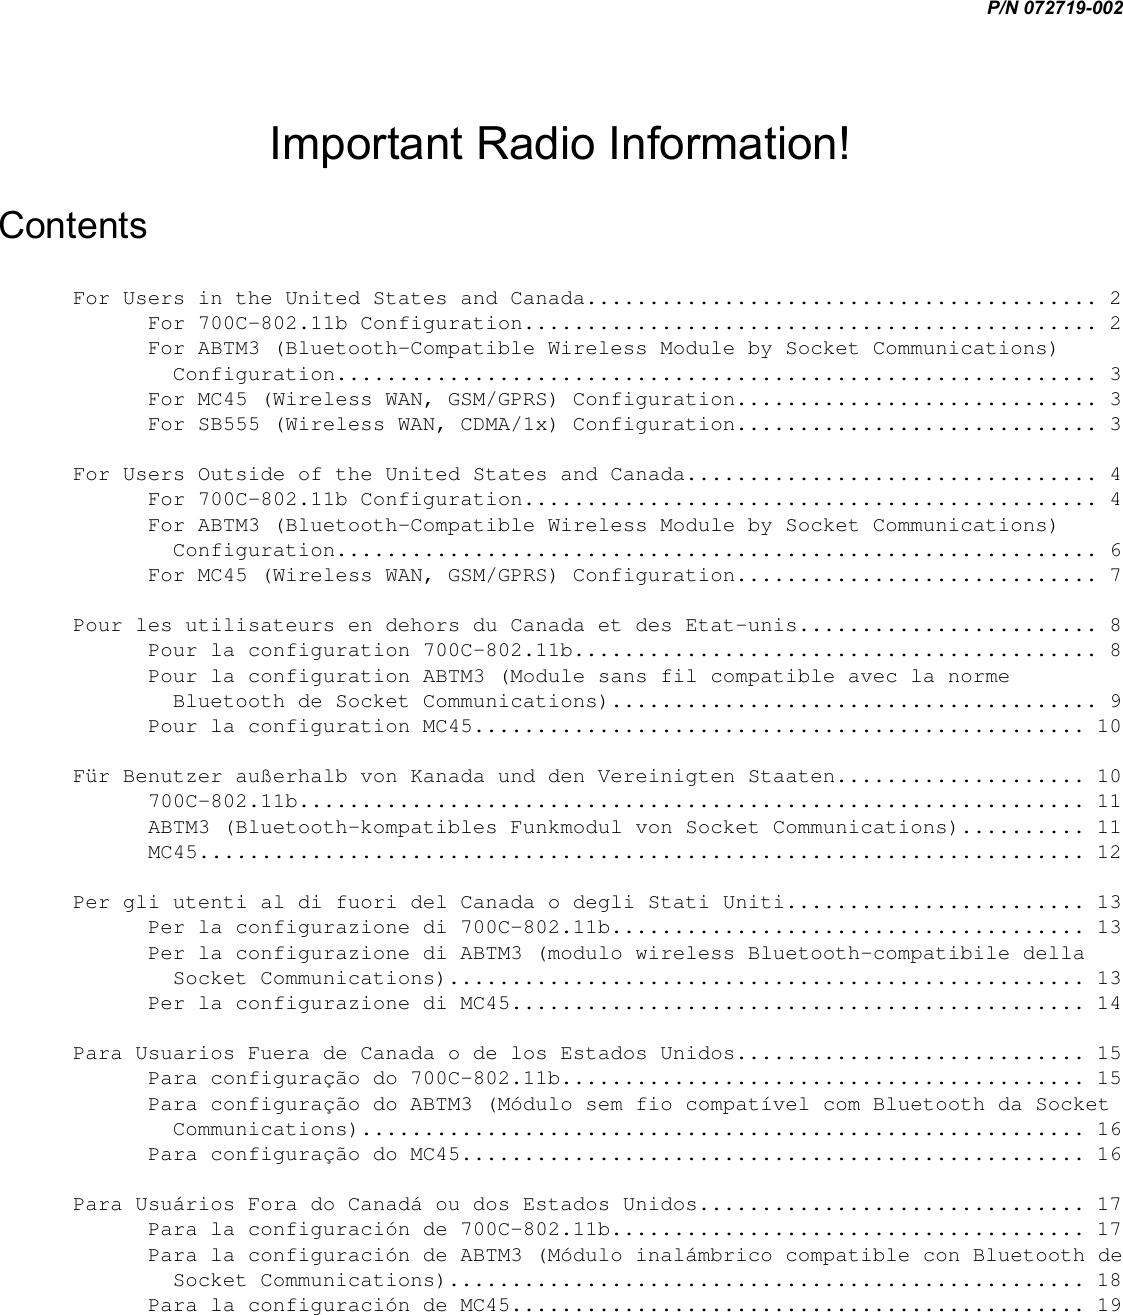 P/N 072719-002  Important Radio Information! Contents For Users in the United States and Canada......................................... 2 For 700C-802.11b Configuration.............................................. 2 For ABTM3 (Bluetooth-Compatible Wireless Module by Socket Communications) Configuration............................................................. 3 For MC45 (Wireless WAN, GSM/GPRS) Configuration............................. 3 For SB555 (Wireless WAN, CDMA/1x) Configuration............................. 3 For Users Outside of the United States and Canada................................. 4 For 700C-802.11b Configuration.............................................. 4 For ABTM3 (Bluetooth-Compatible Wireless Module by Socket Communications) Configuration............................................................. 6 For MC45 (Wireless WAN, GSM/GPRS) Configuration............................. 7 Pour les utilisateurs en dehors du Canada et des Etat-unis........................ 8 Pour la configuration 700C-802.11b.......................................... 8 Pour la configuration ABTM3 (Module sans fil compatible avec la norme Bluetooth de Socket Communications)....................................... 9 Pour la configuration MC45................................................. 10 Für Benutzer außerhalb von Kanada und den Vereinigten Staaten.................... 10 700C-802.11b............................................................... 11 ABTM3 (Bluetooth-kompatibles Funkmodul von Socket Communications).......... 11 MC45....................................................................... 12 Per gli utenti al di fuori del Canada o degli Stati Uniti........................ 13 Per la configurazione di 700C-802.11b...................................... 13 Per la configurazione di ABTM3 (modulo wireless Bluetooth-compatibile della Socket Communications)................................................... 13 Per la configurazione di MC45.............................................. 14 Para Usuarios Fuera de Canada o de los Estados Unidos............................ 15 Para configuração do 700C-802.11b.......................................... 15 Para configuração do ABTM3 (Módulo sem fio compatível com Bluetooth da Socket Communications).......................................................... 16 Para configuração do MC45.................................................. 16 Para Usuários Fora do Canadá ou dos Estados Unidos............................... 17 Para la configuración de 700C-802.11b...................................... 17 Para la configuración de ABTM3 (Módulo inalámbrico compatible con Bluetooth de Socket Communications)................................................... 18 Para la configuración de MC45.............................................. 19 